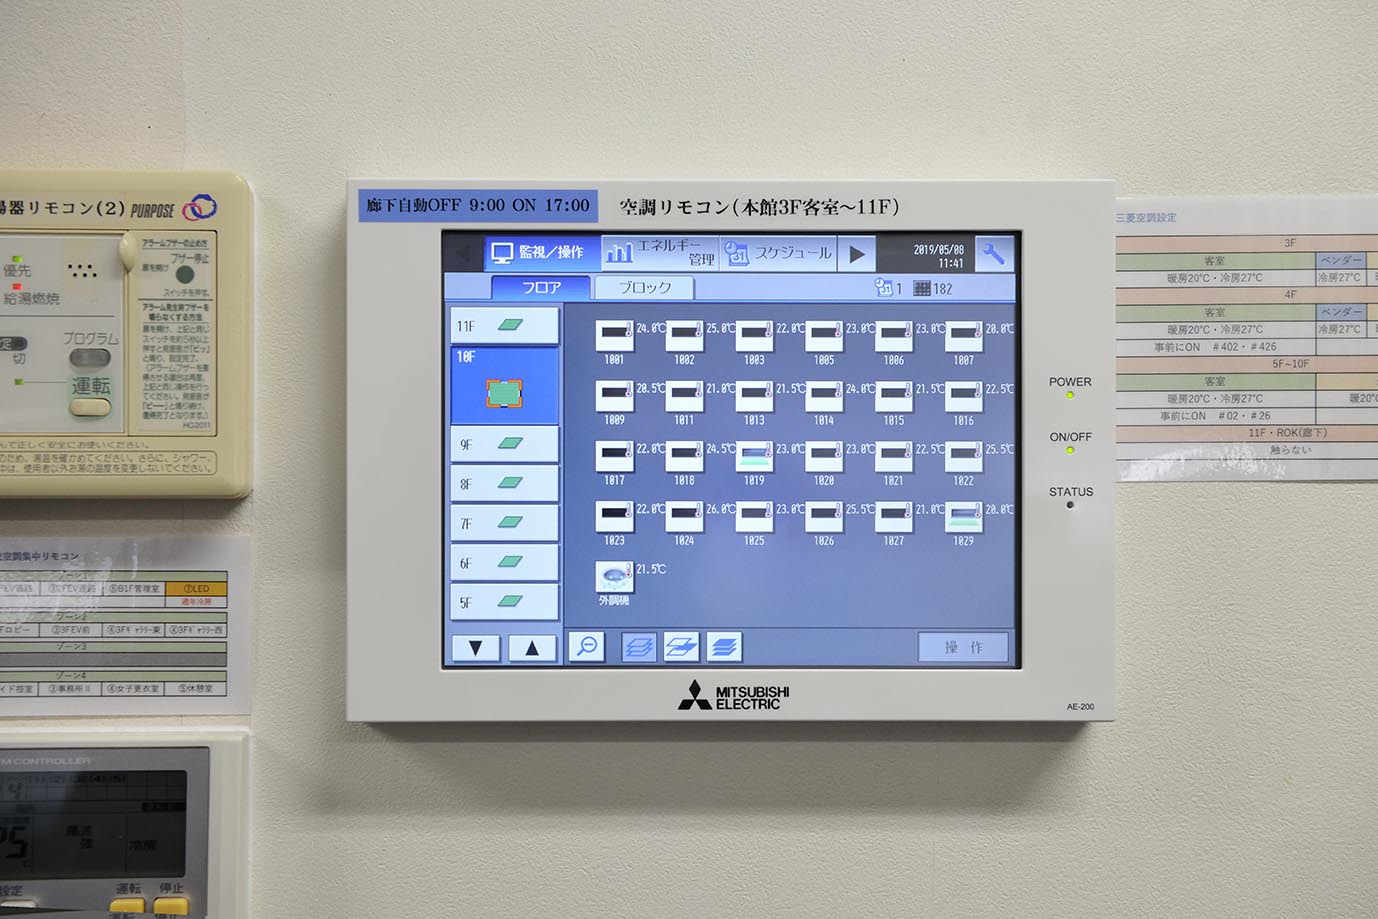 事務室に設置された「空調冷熱総合管理システムAE-200J」。客室の温度を見える化しており、お客様のチェックイン前に事務室から空調を入れることが可能